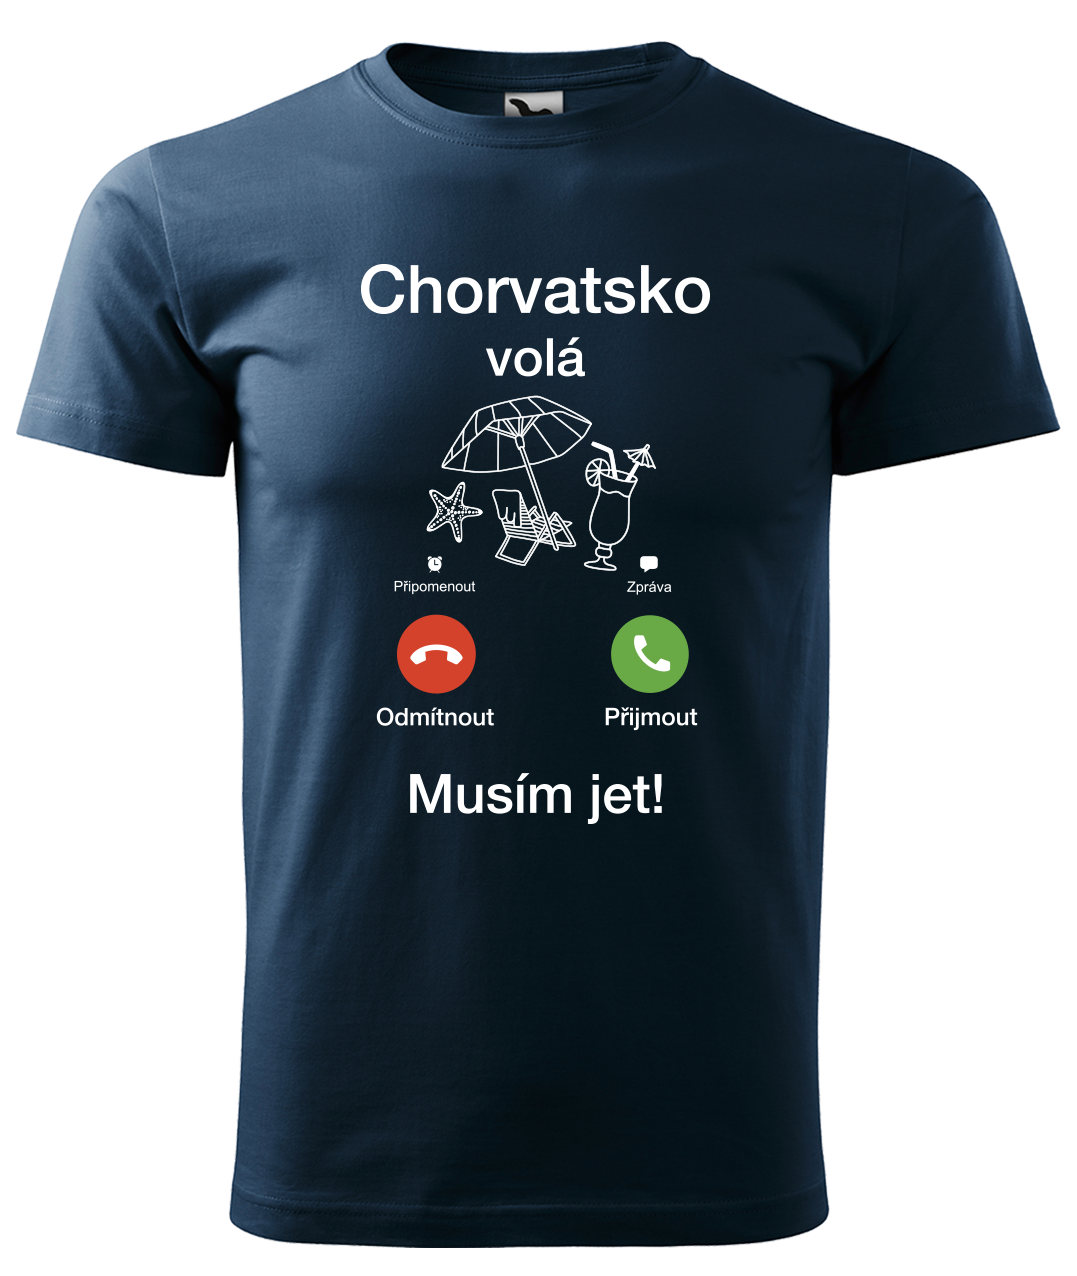 Dětské cestovatelské tričko - Chorvatsko volá - musím jet! Velikost: 4 roky / 110 cm, Barva: Námořní modrá (02)